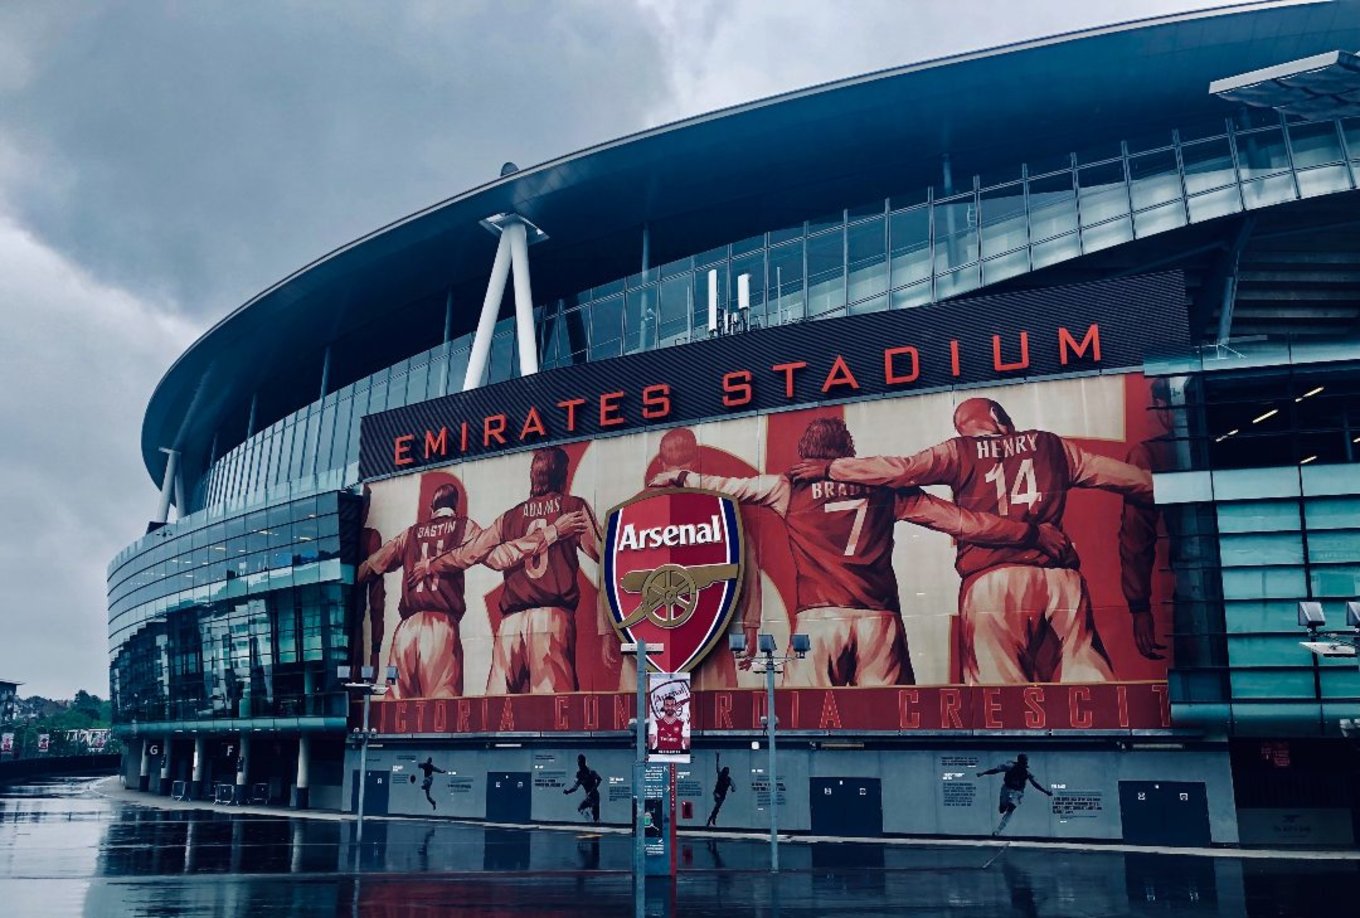 Arsenal Emirates Studium